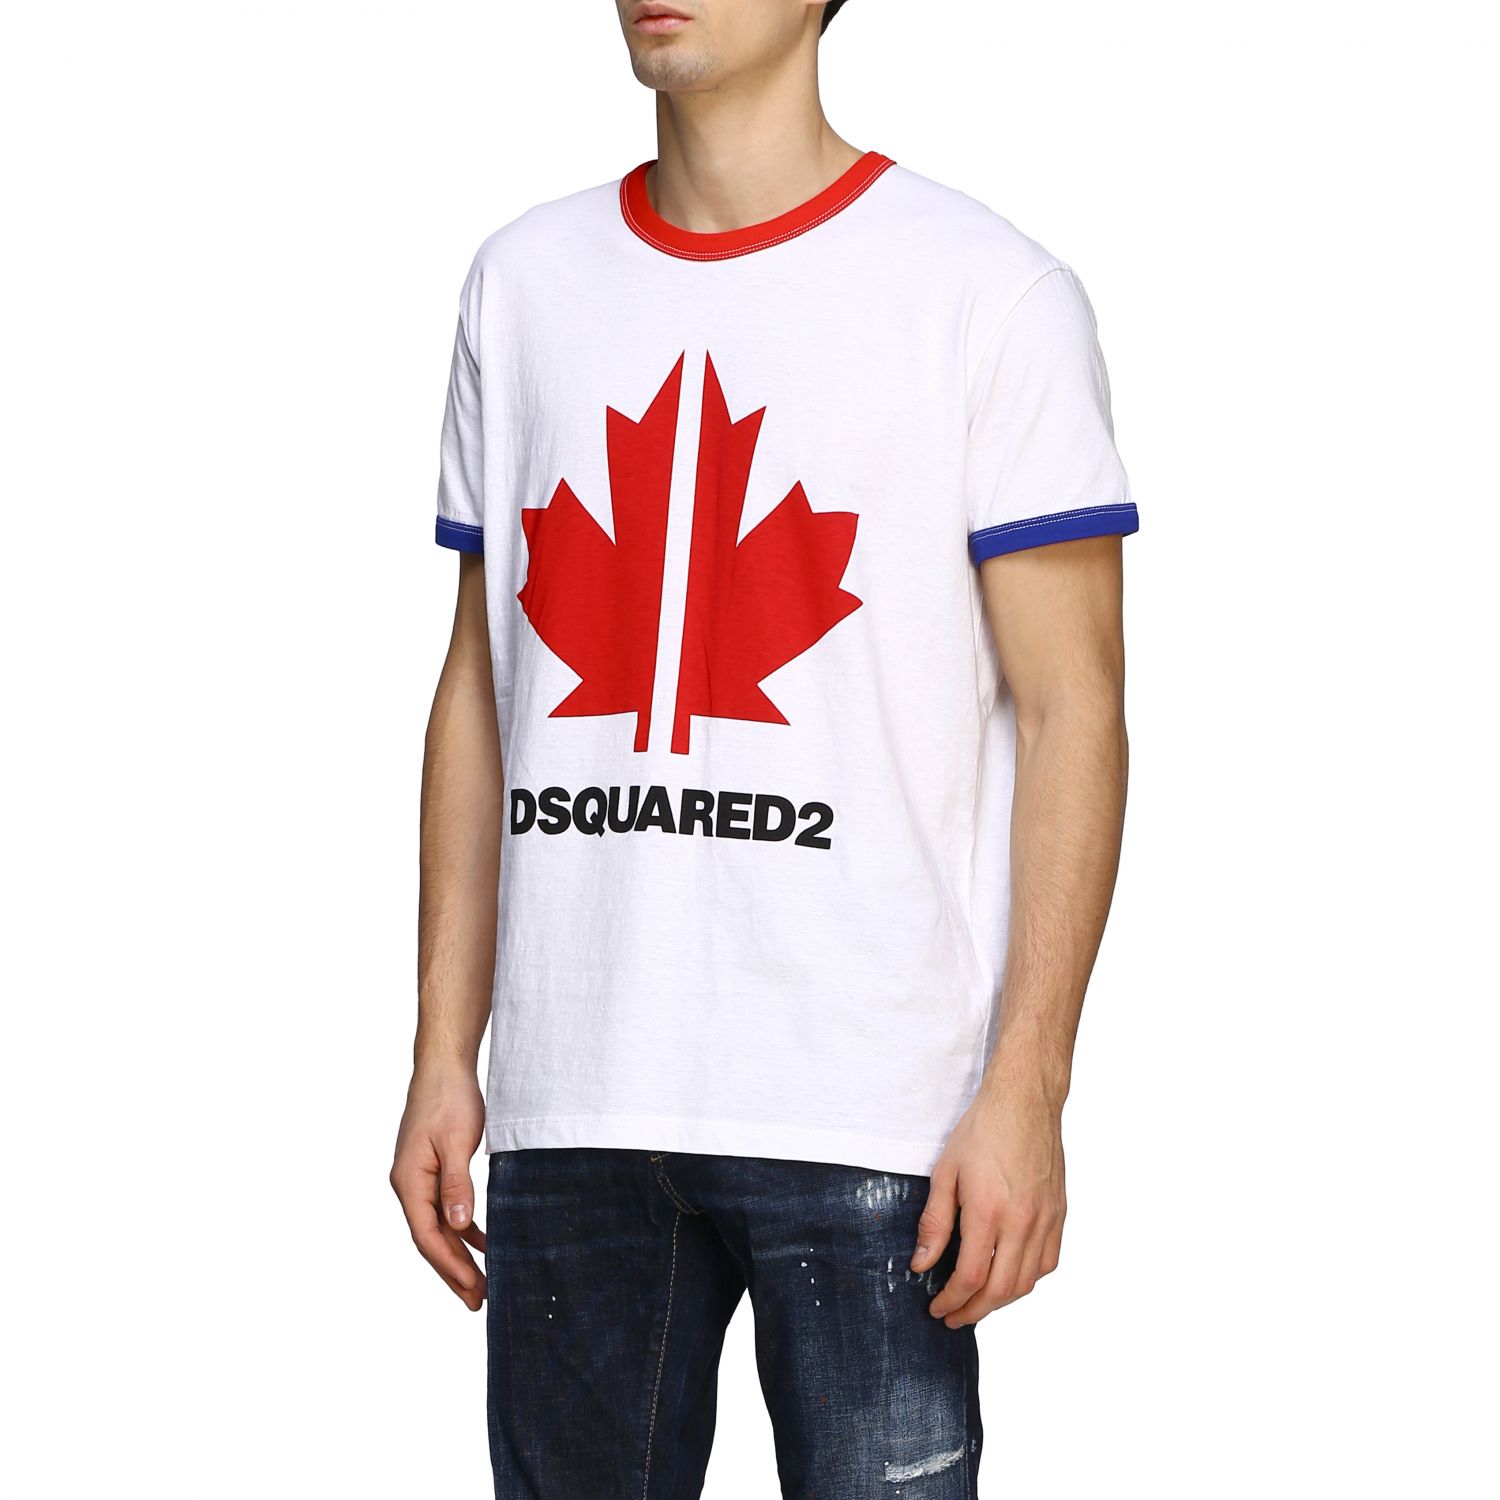 dsquared2 leaf logo short sleeved t shirt